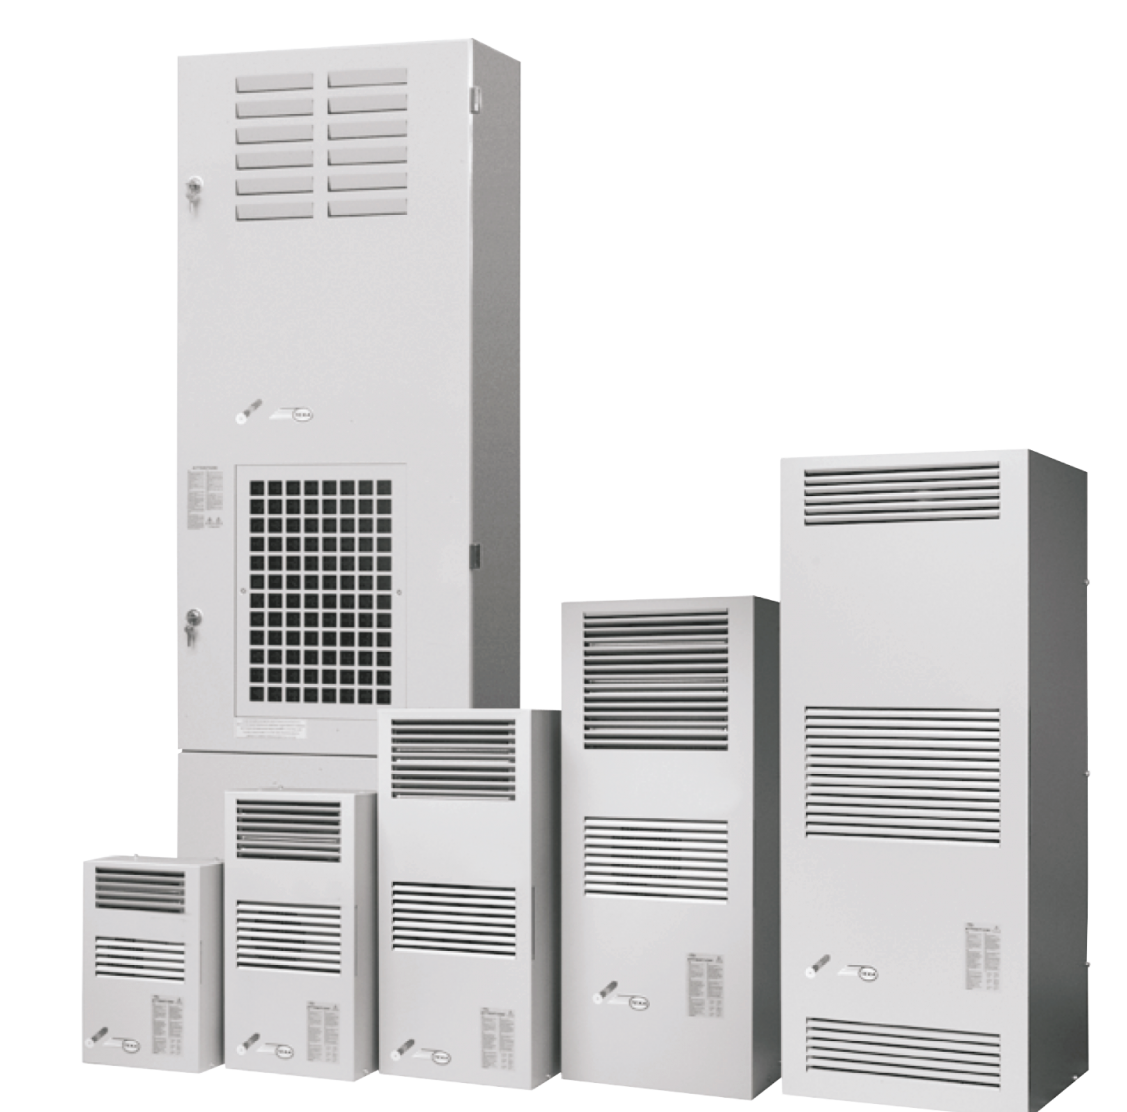 Air conditioner EGO16 (230V, 50-60Hz, 1600W)